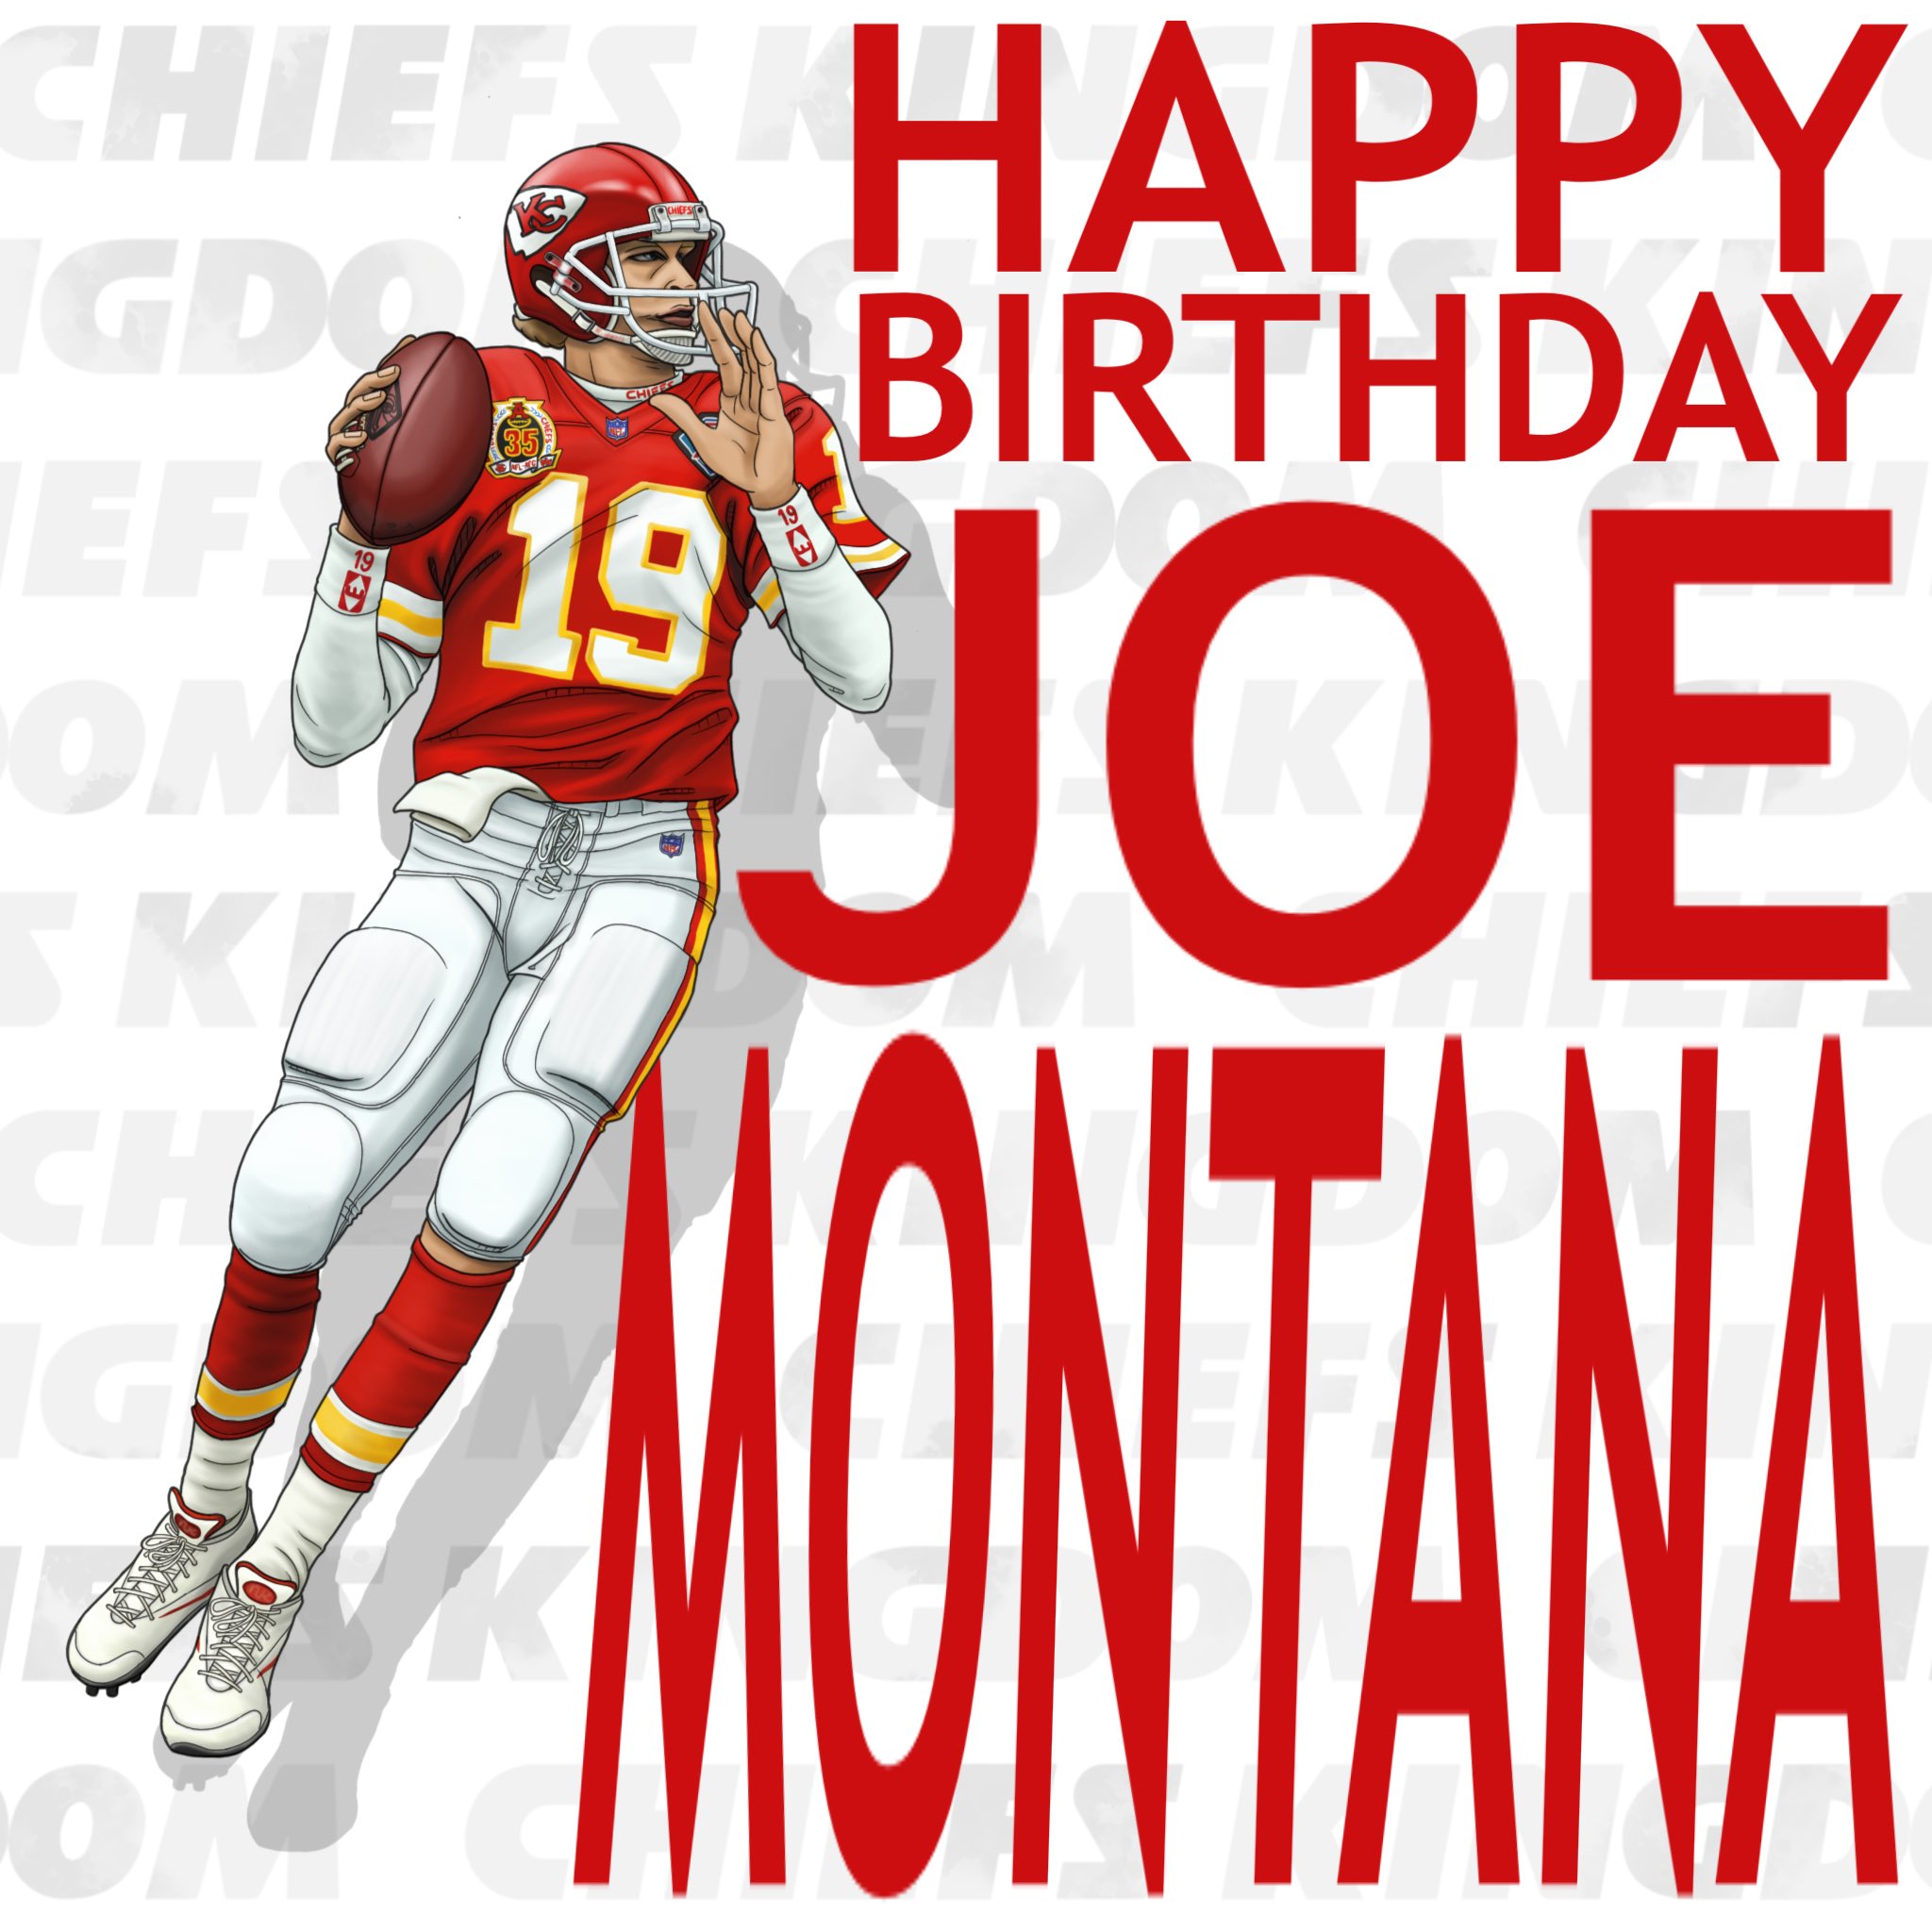 Happy Birthday JOE MONTANA  